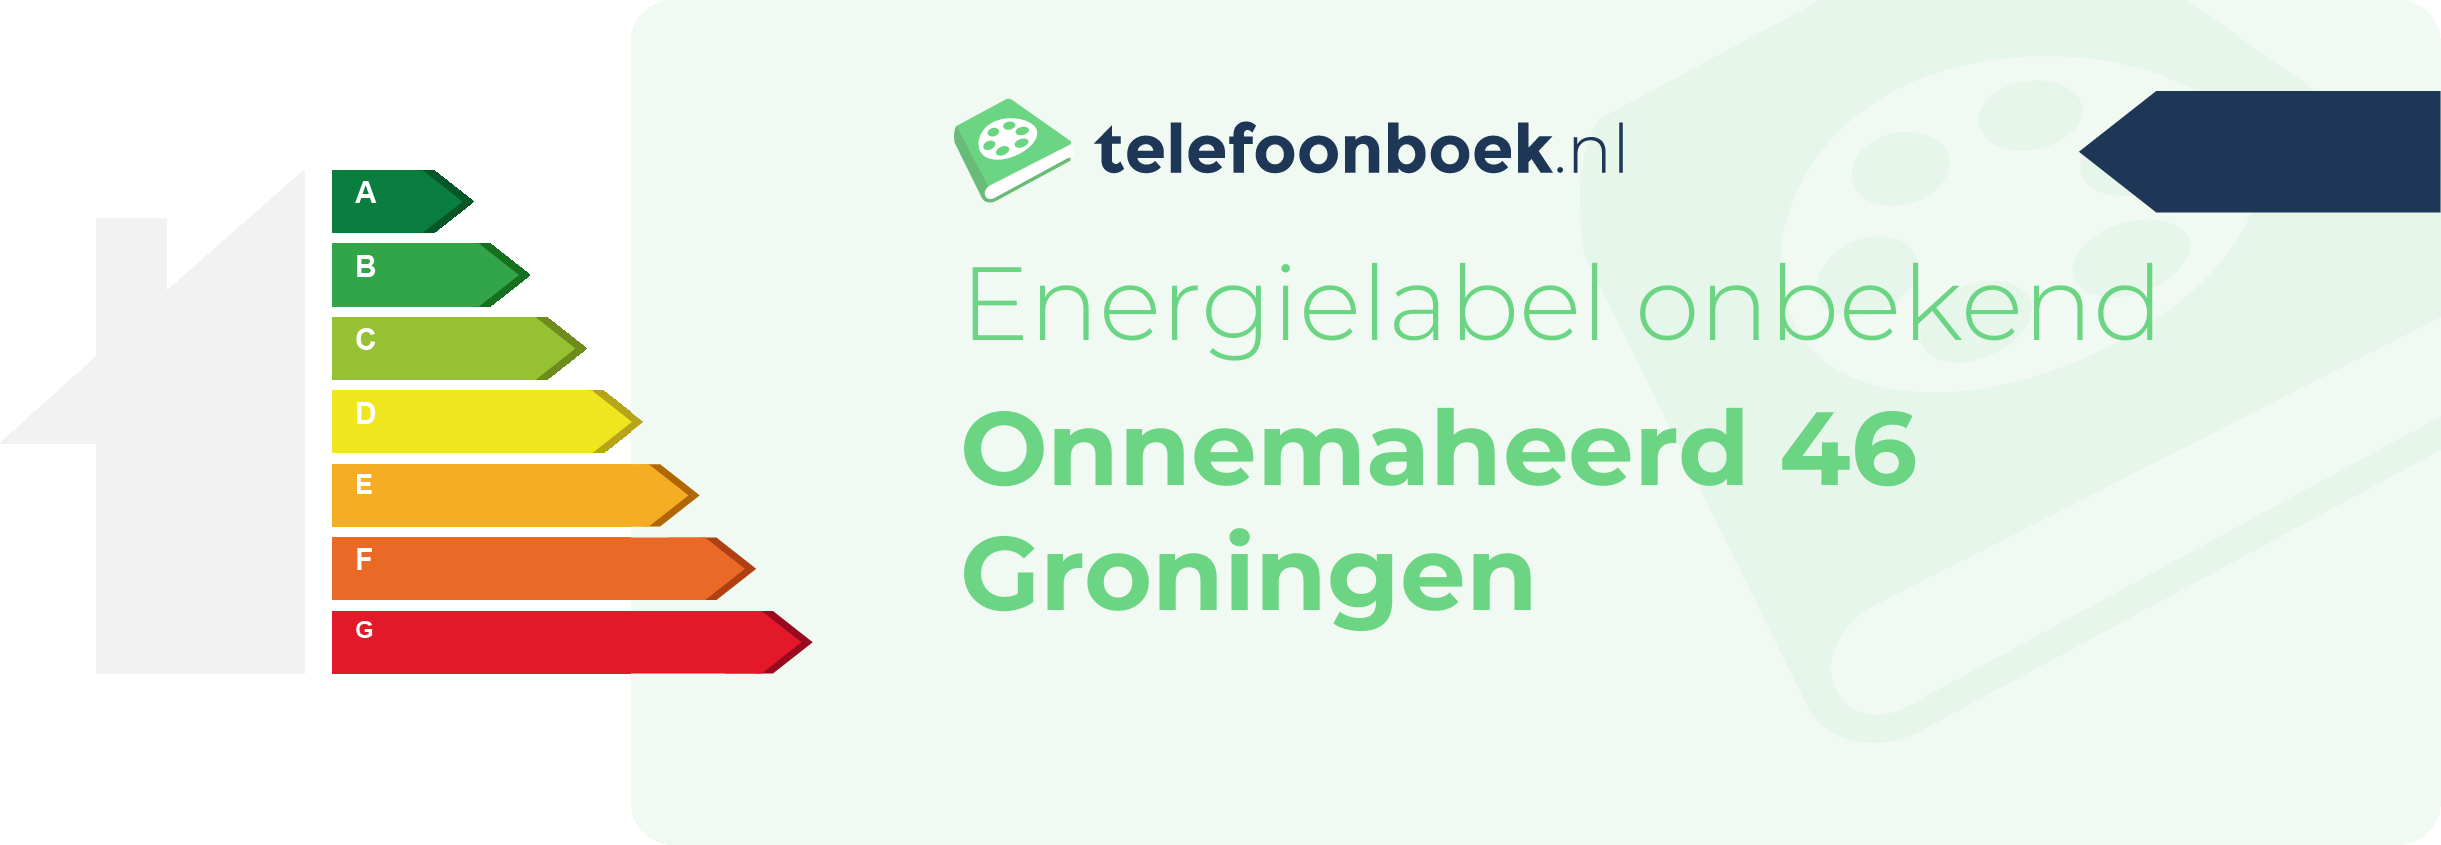 Energielabel Onnemaheerd 46 Groningen